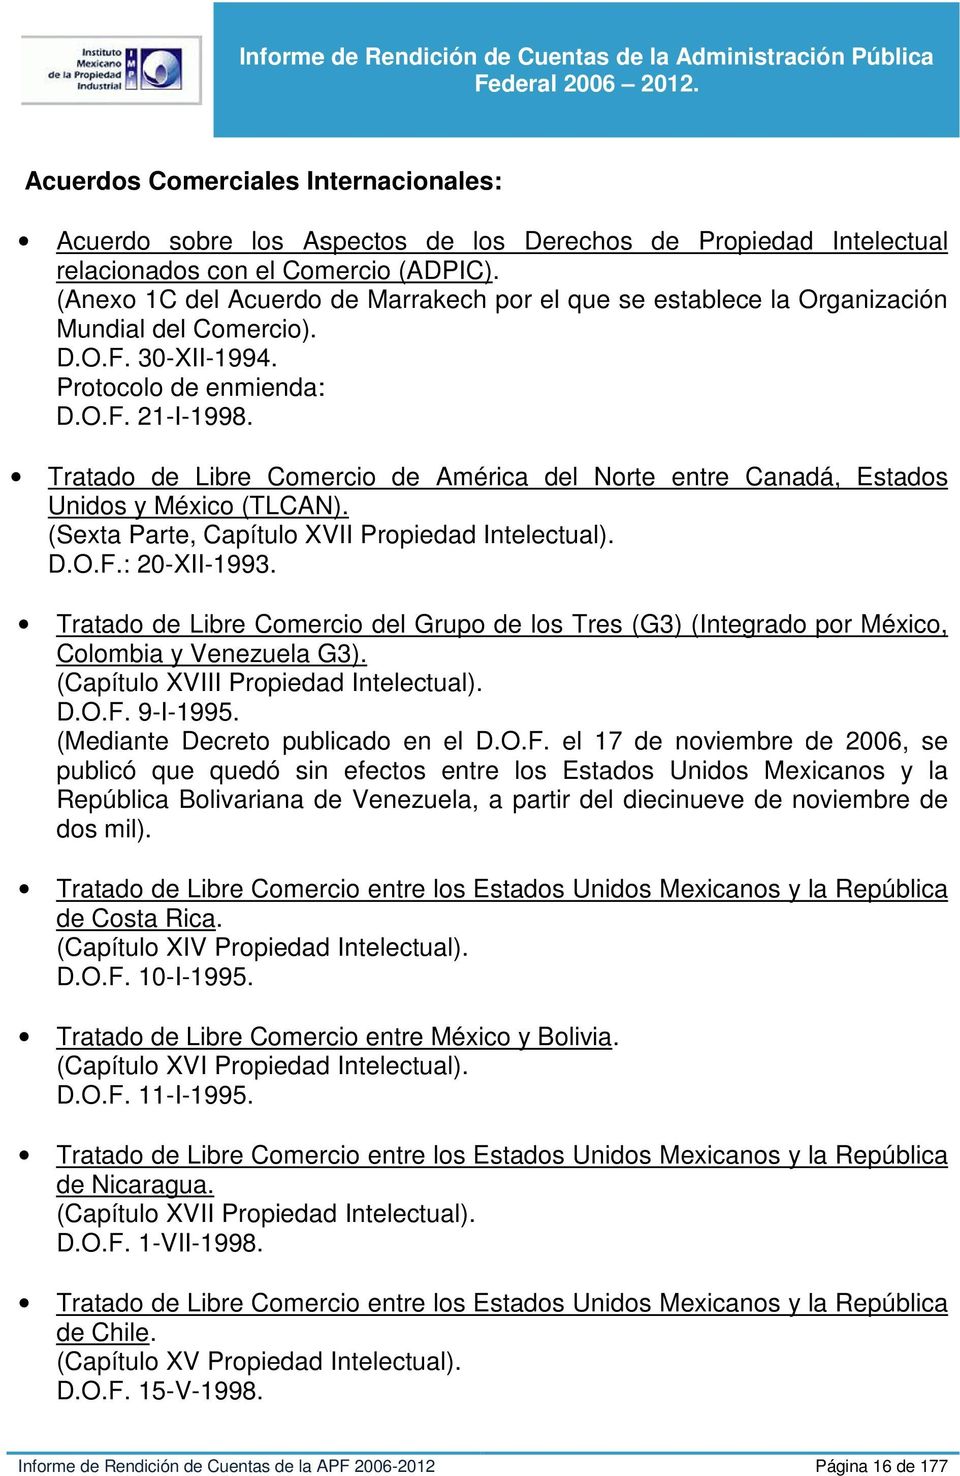 Tratado de Libre Comercio de América del Norte entre Canadá, Estados Unidos y México (TLCAN). (Sexta Parte, Capítulo XVII Propiedad Intelectual). D.O.F.: 20-XII-1993.